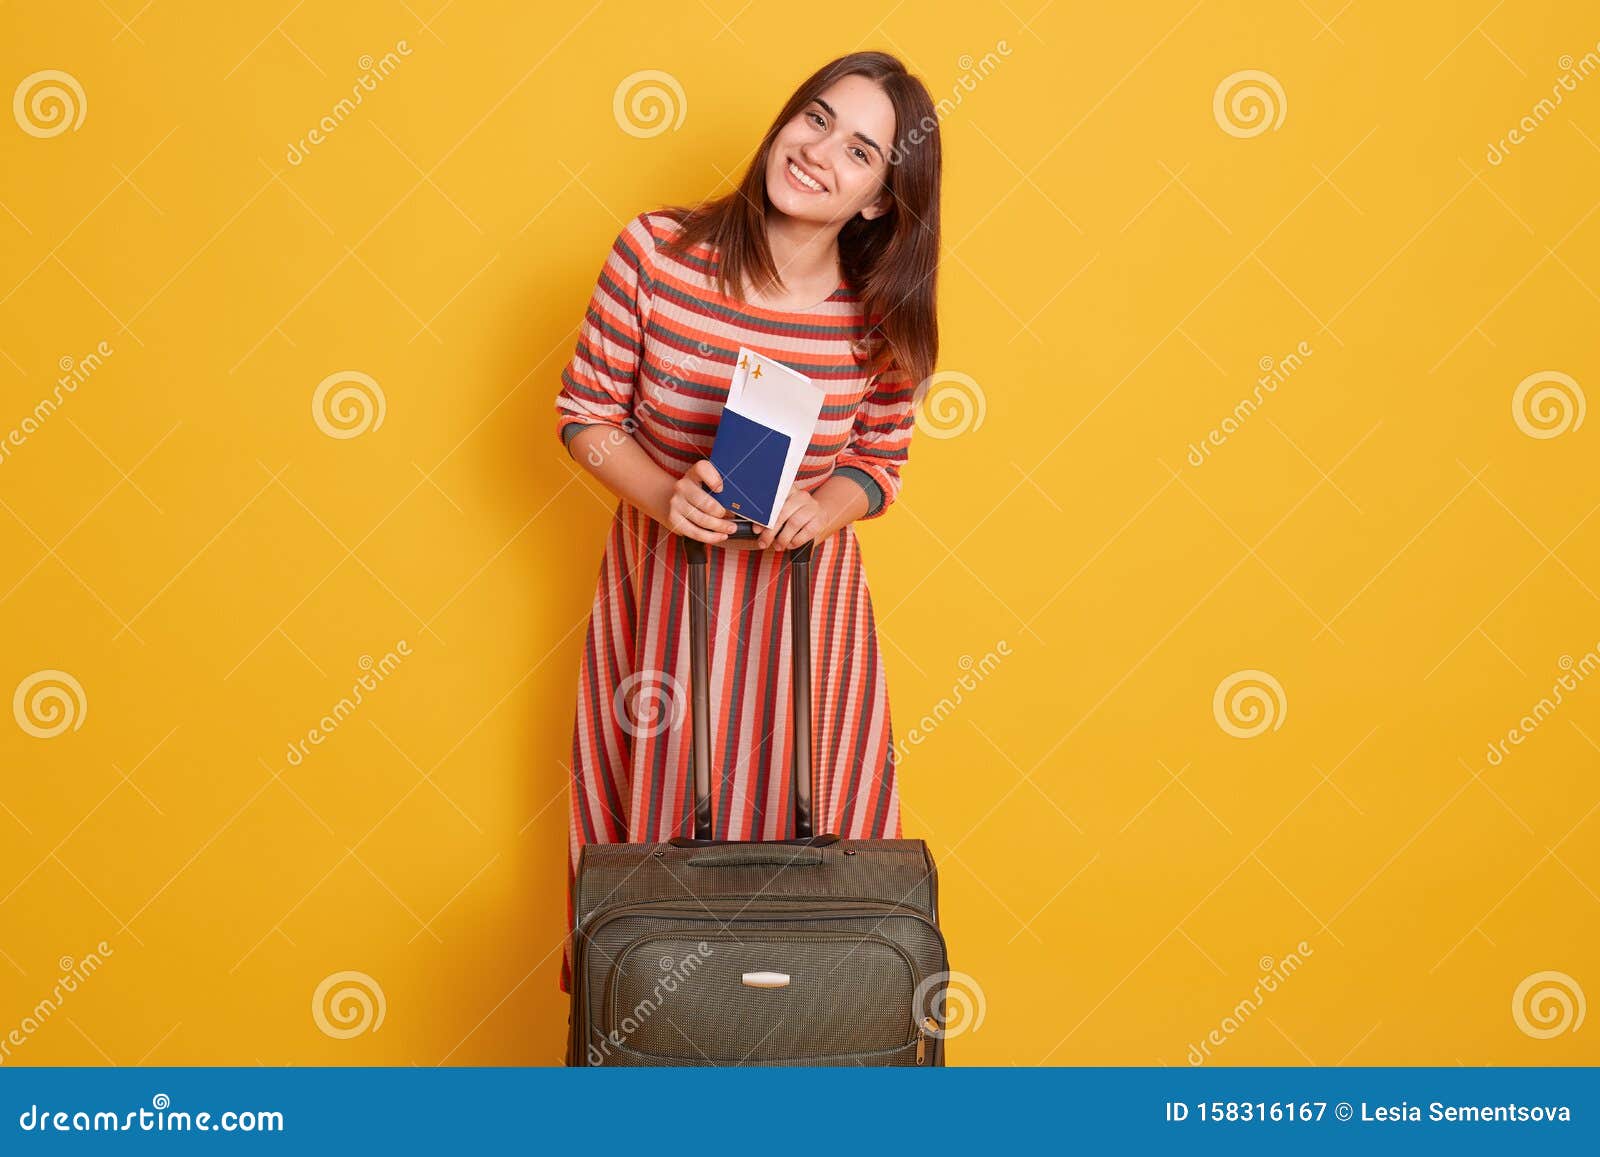 Standing hear. Девушка с билетом в руках. Девушка с билетами на самолет.